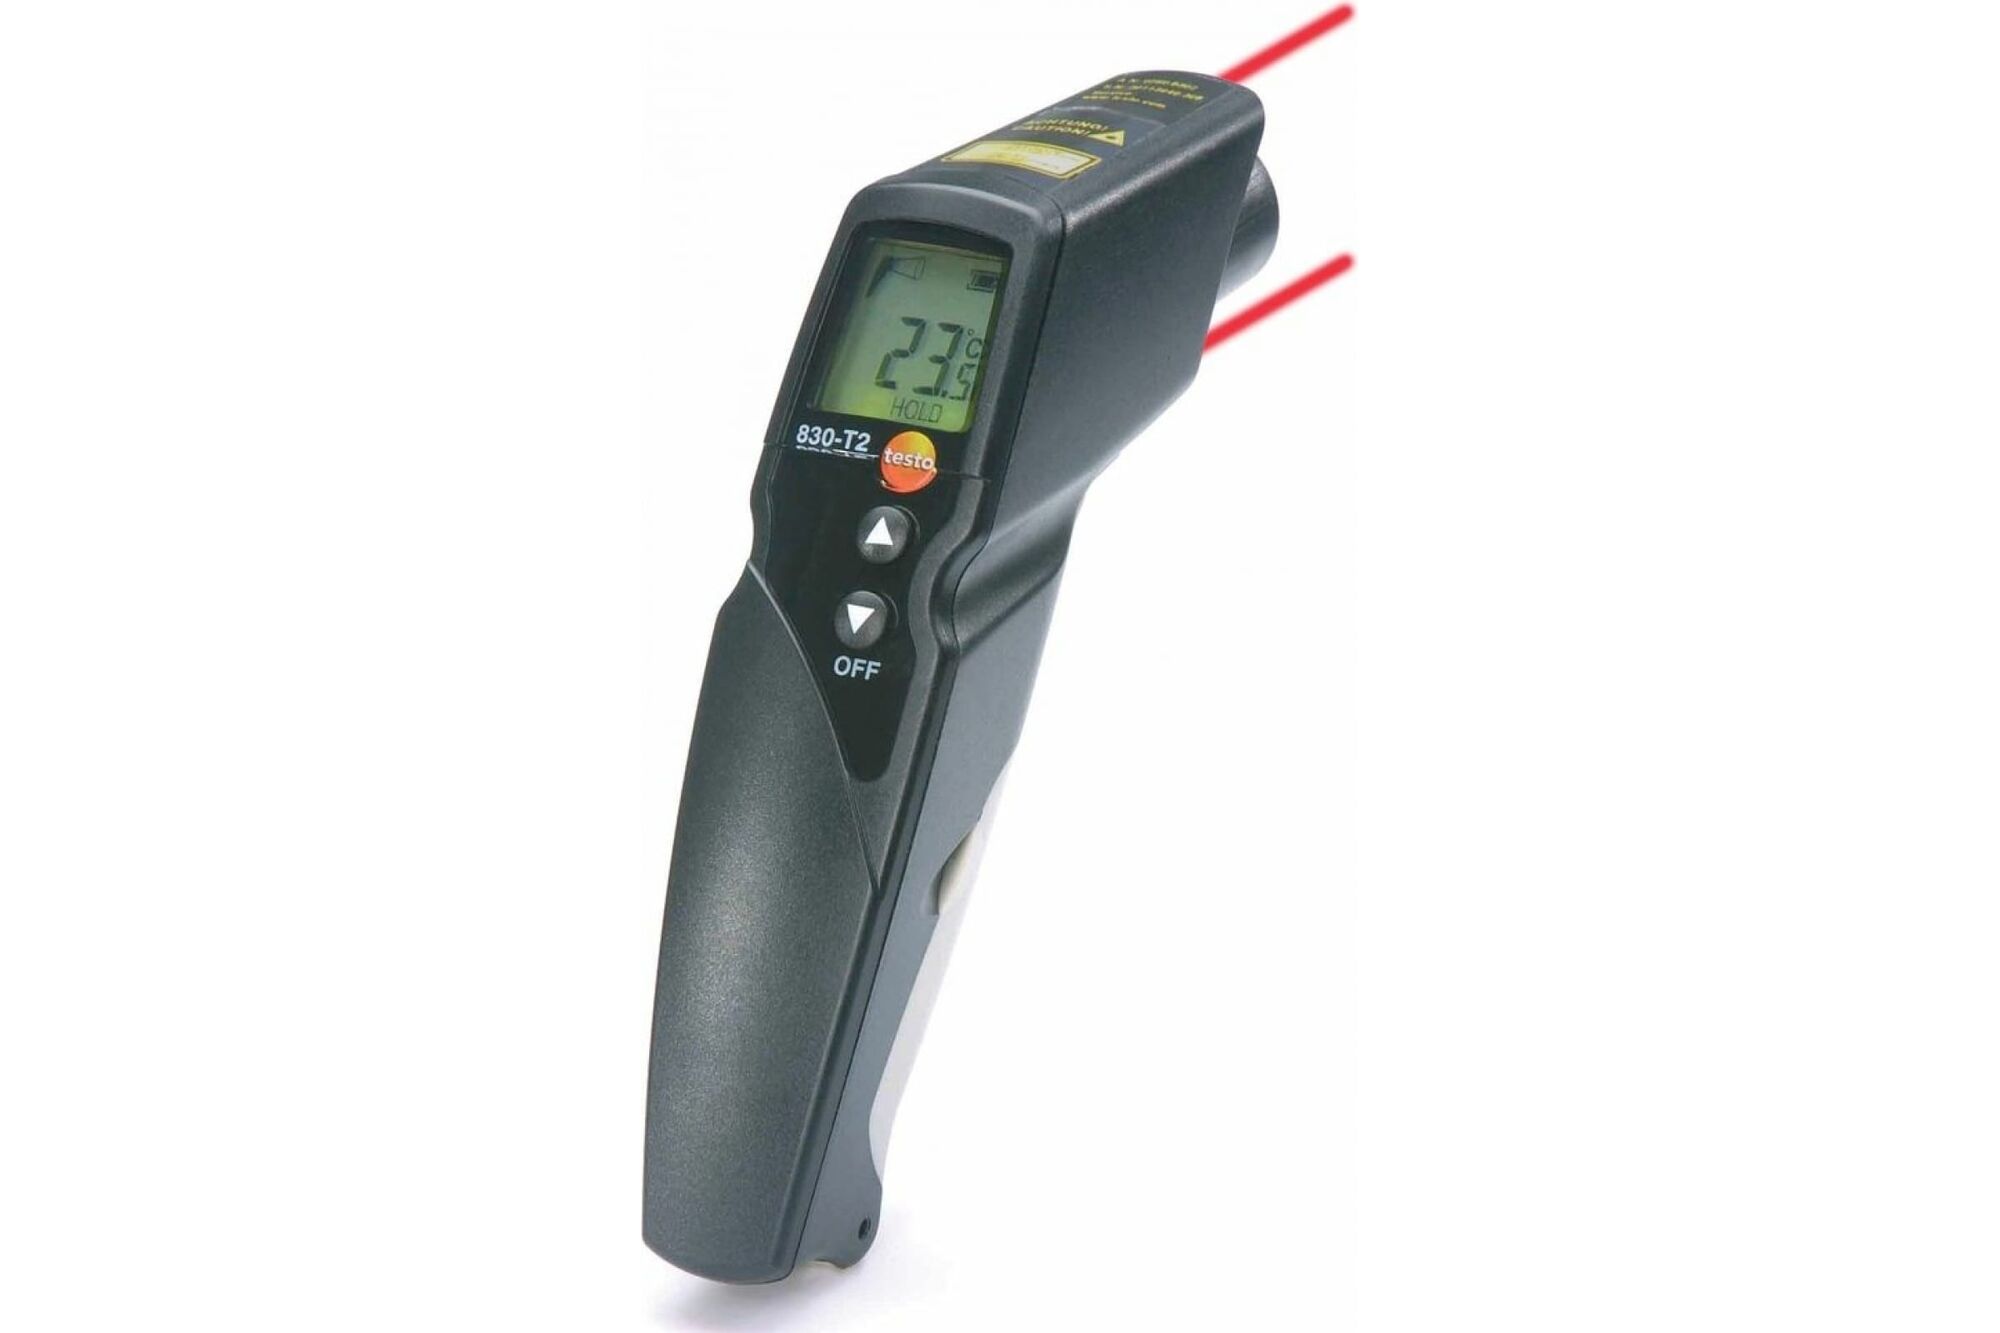 Инфракрасный термометр Testo 830-T2